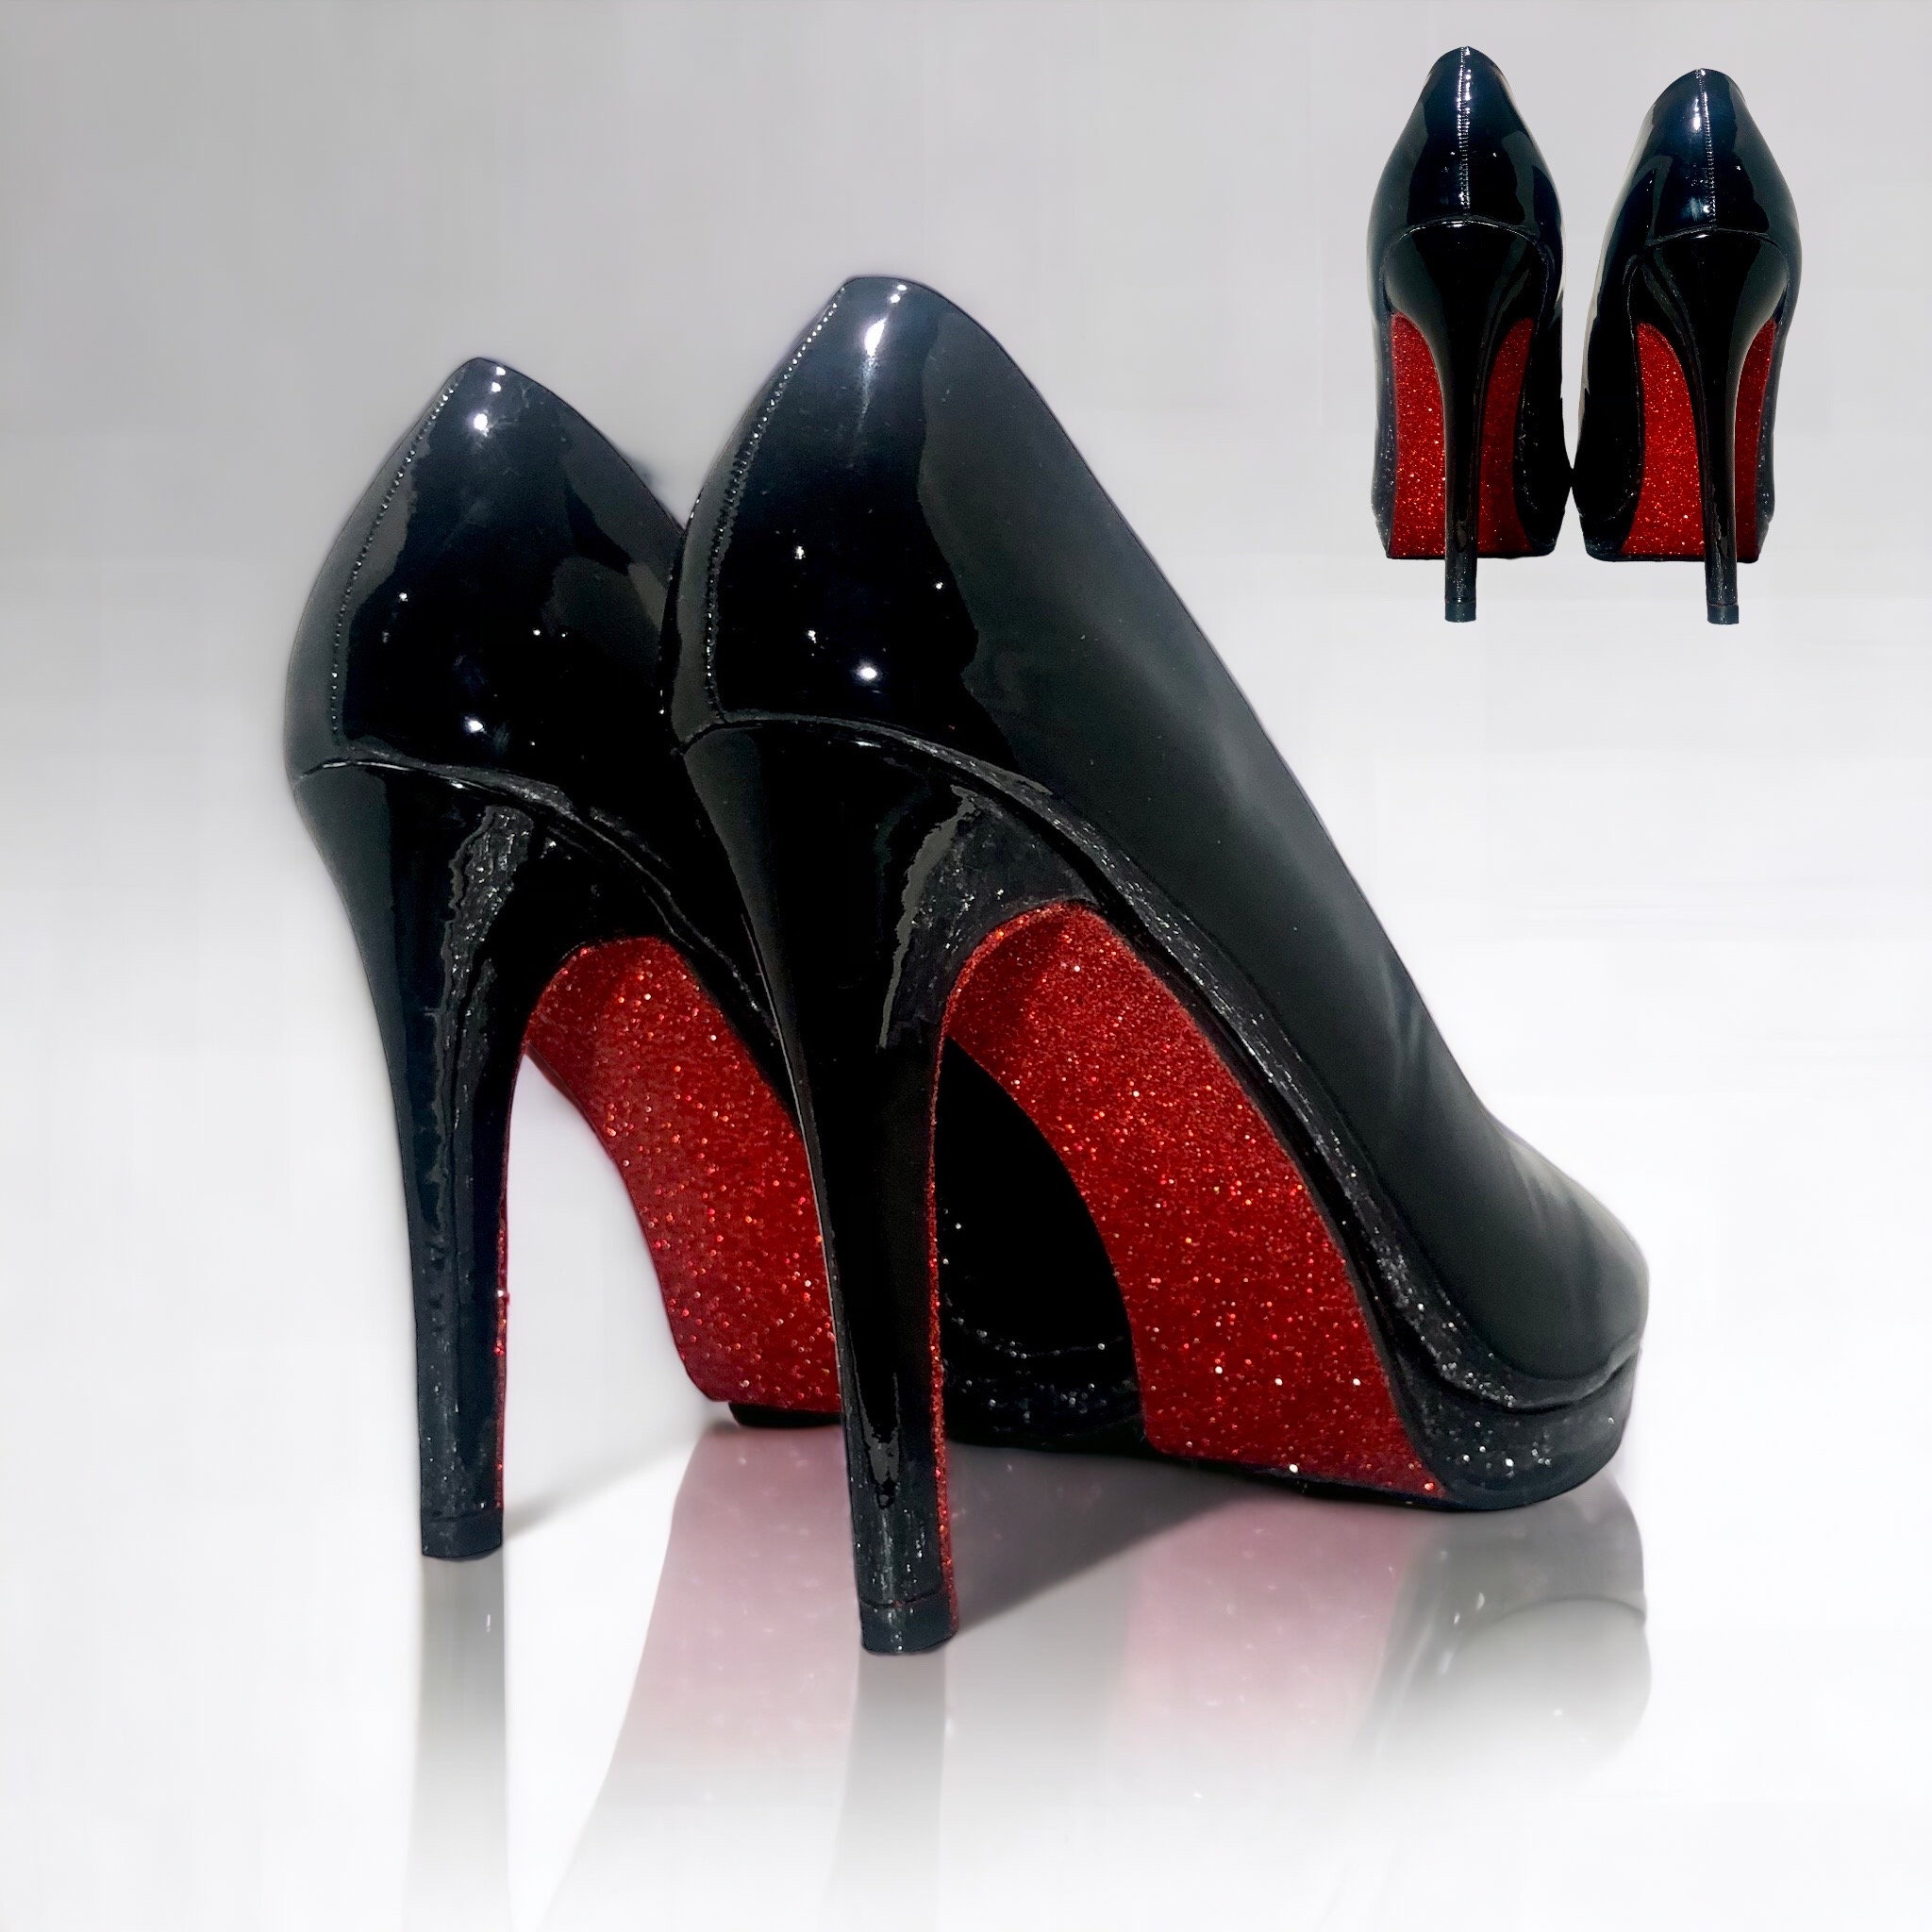 Louis Vuitton Black High Heels Red Bottoms